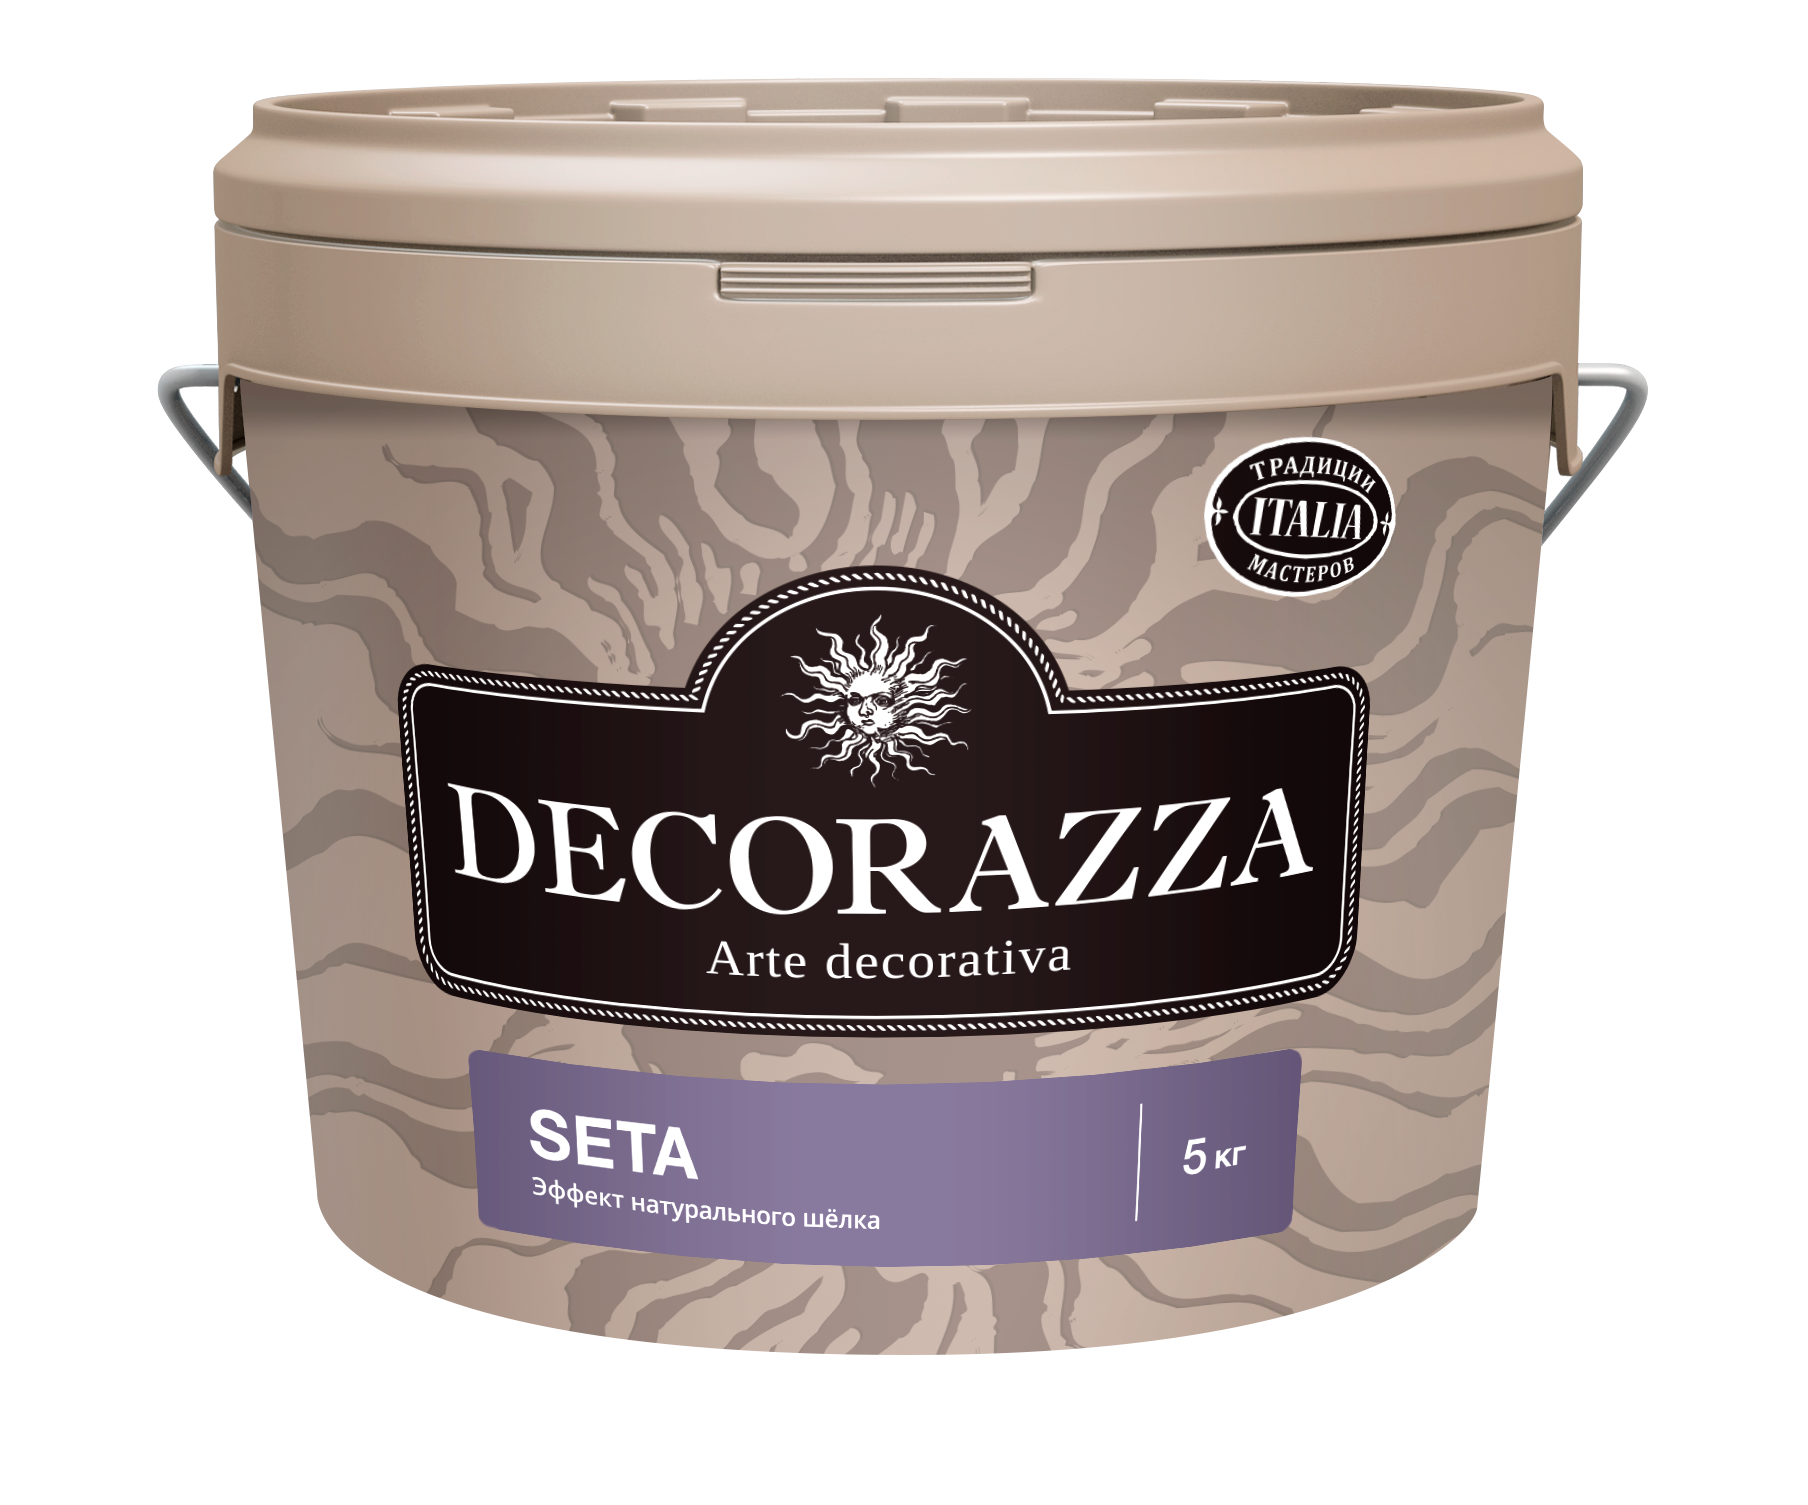 Декоративная штукатурка Decorazza Seta Argento ST 001, серебро, 5 кг краска декоративная decorazza alcantara 1 л 0 7 кг